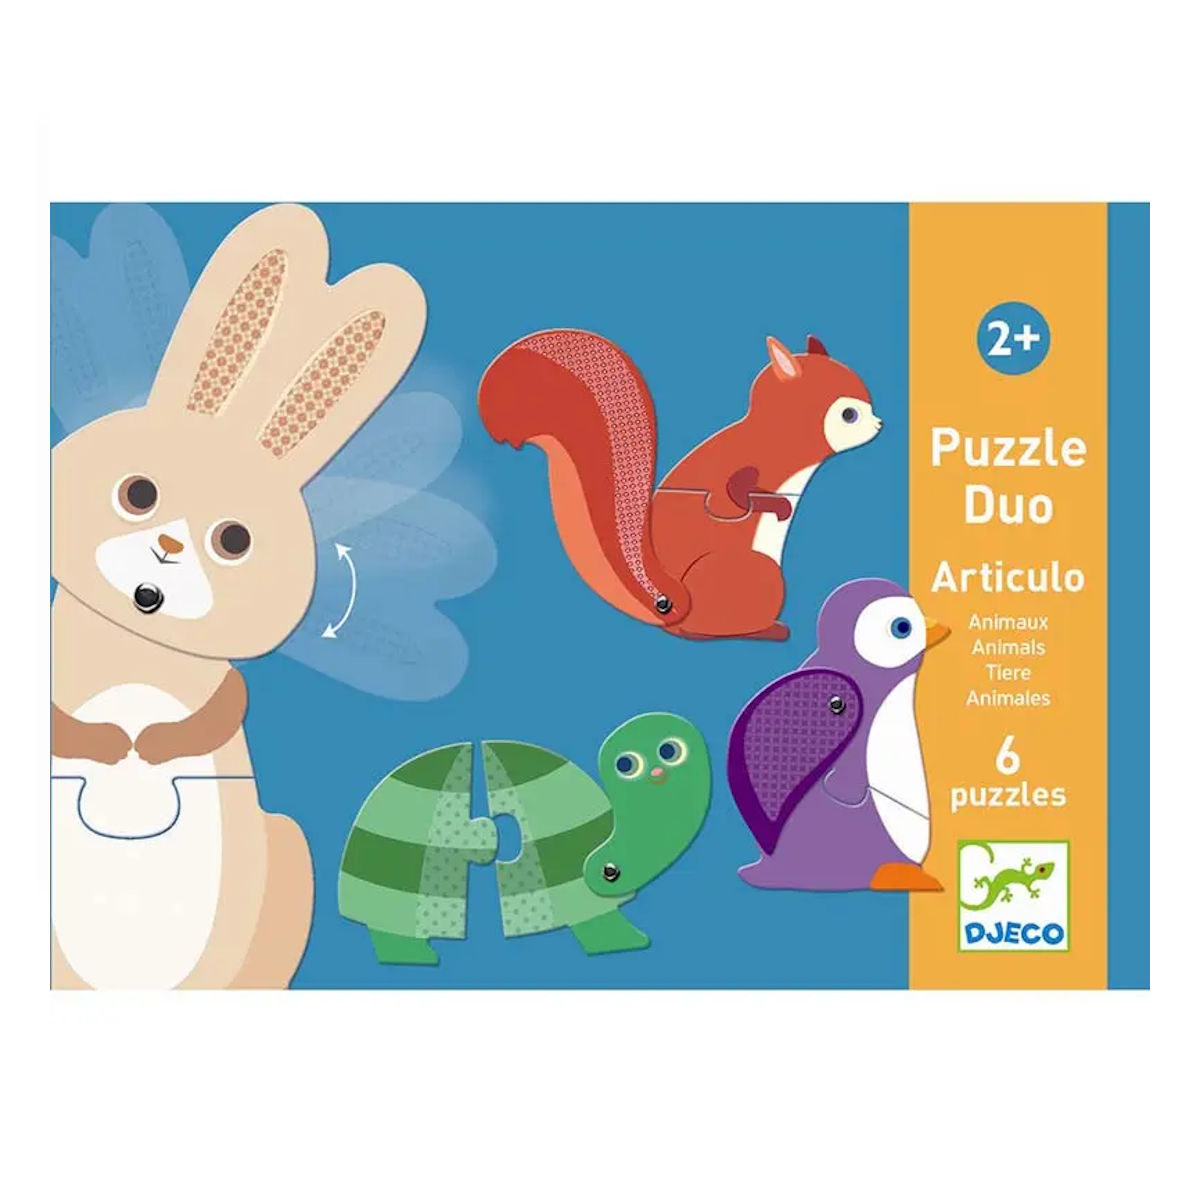 Puzzle Duo Articulo Animaux - Set Puzzle 2 Pezzi - Djeco